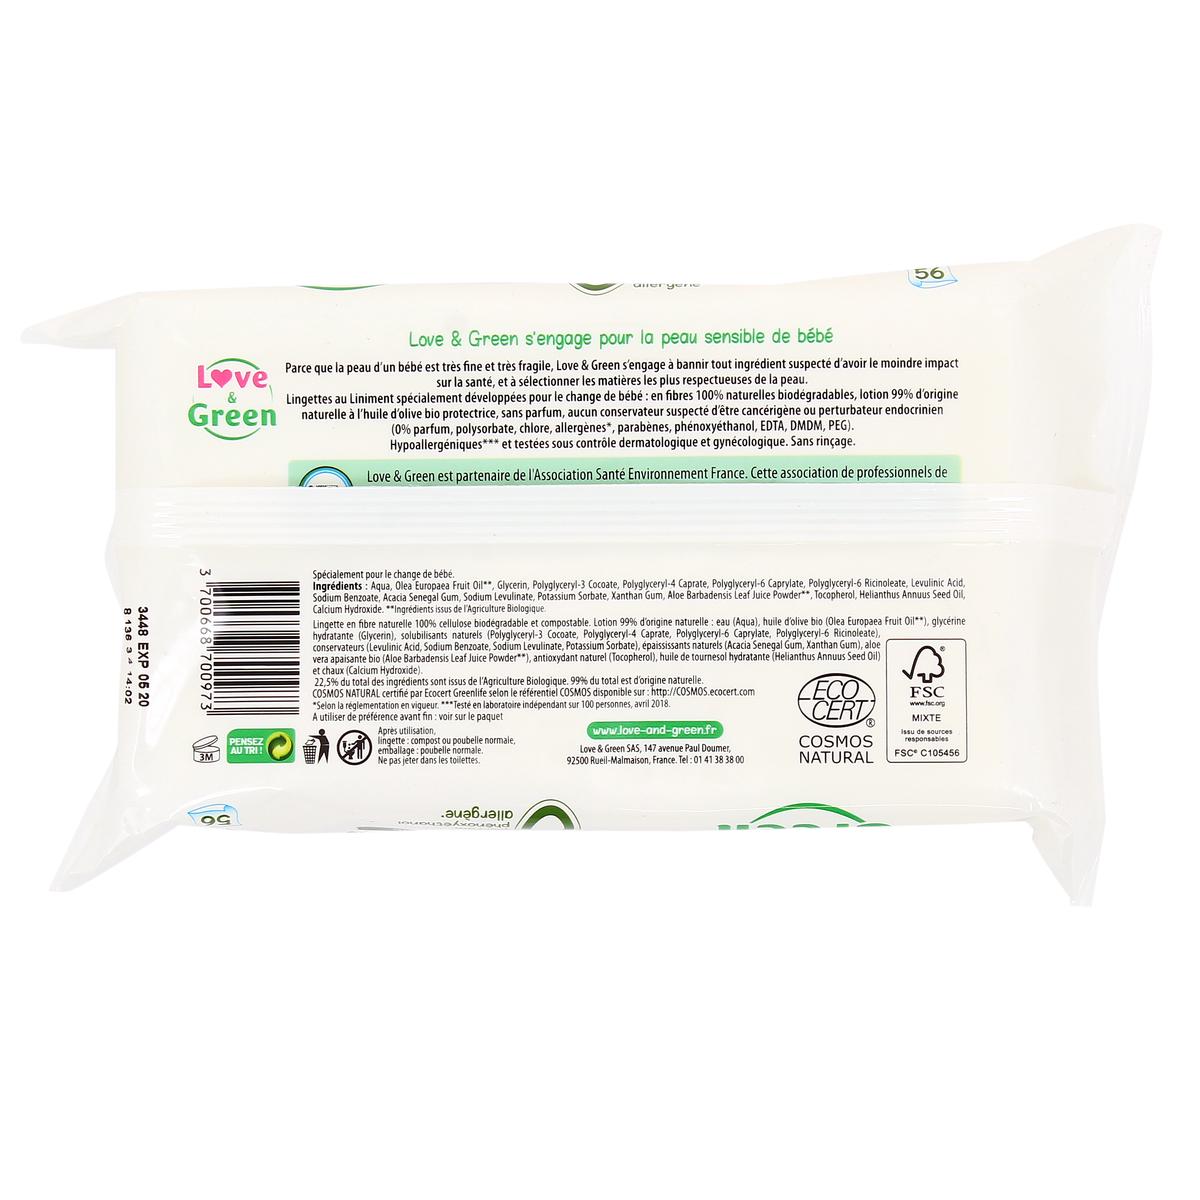 Love & Green Lingettes au Liniment Saines et Ecologiques - Paquet de 56  Lingettes - Certifiée Cosmo Natural par ECOCERT et FSC - Emballage  recyclable